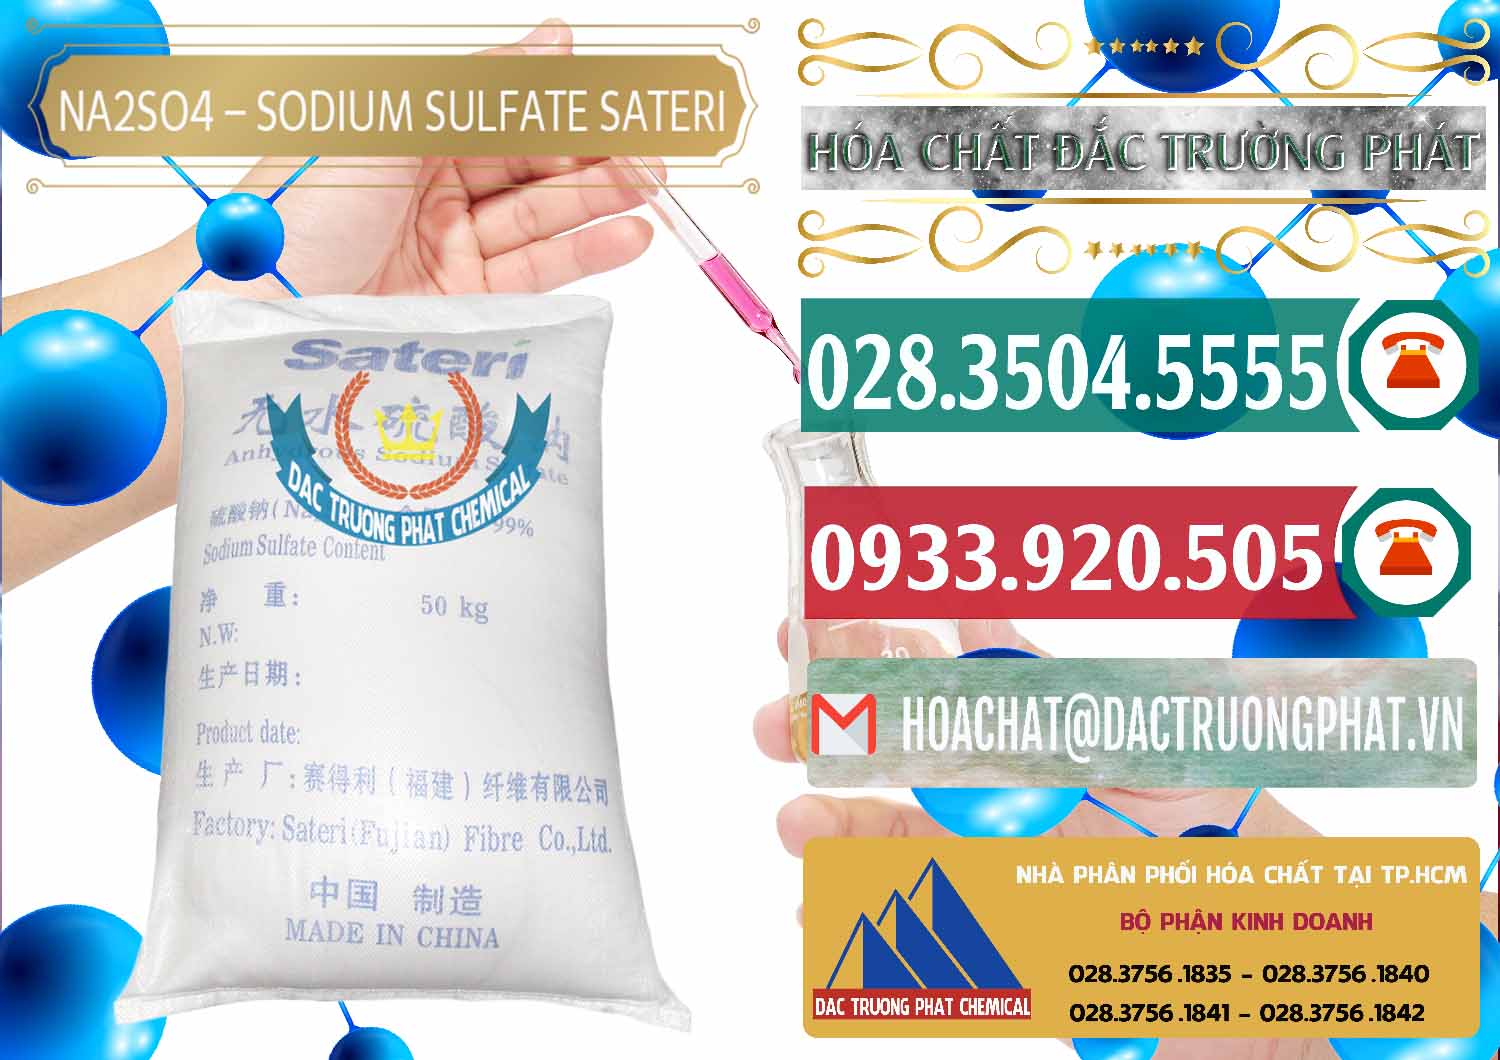 Cty bán _ cung cấp Sodium Sulphate - Muối Sunfat Na2SO4 Sateri Trung Quốc China - 0100 - Chuyên cung cấp & phân phối hóa chất tại TP.HCM - muabanhoachat.vn